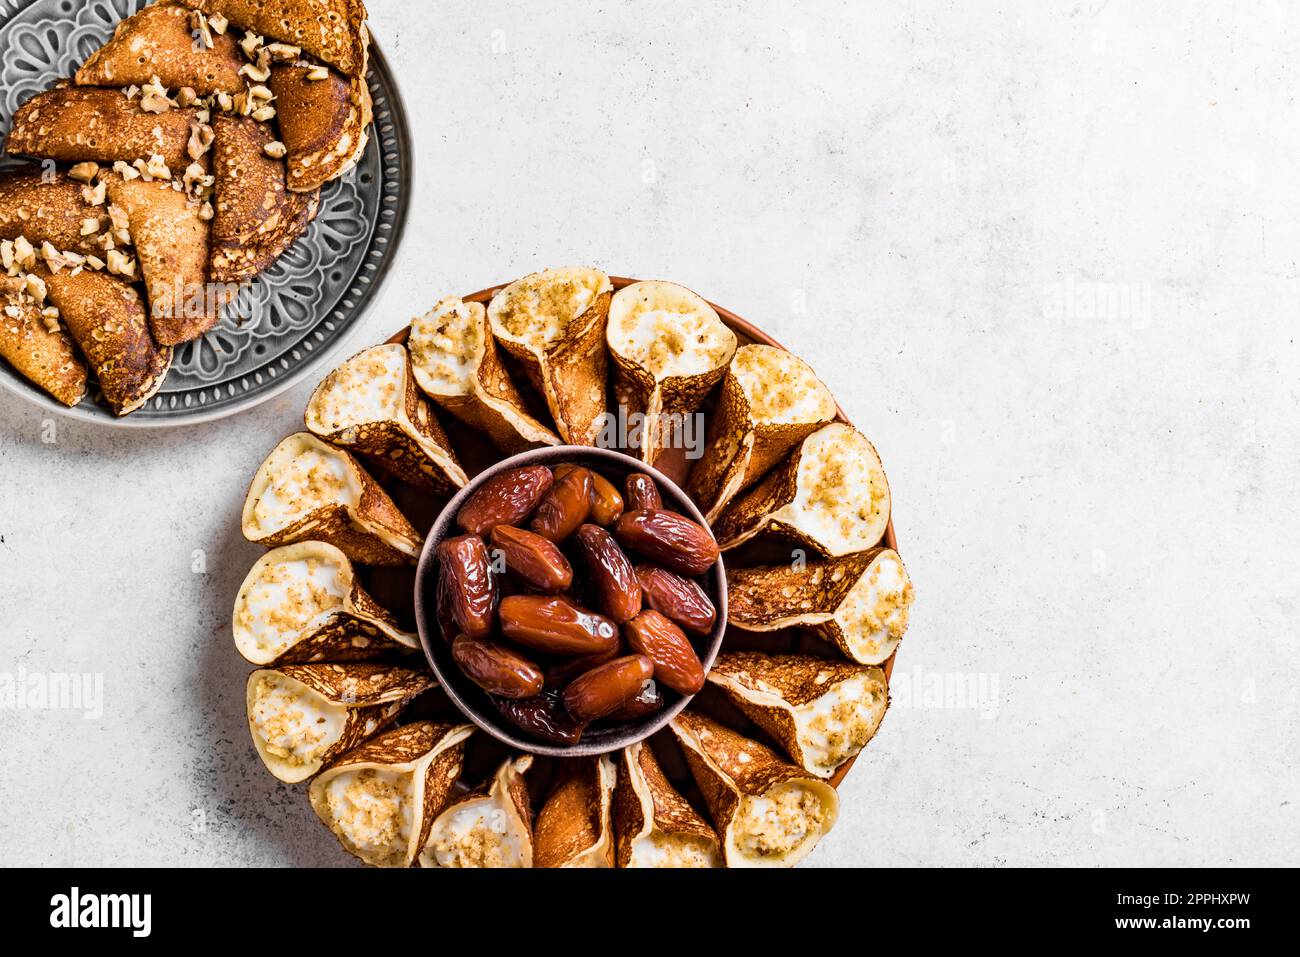 Postre iftar árabe del Medio Oriente qatayef o atayef, pastelería rellena en forma de media luna con nueces en blanco, espacio de copia. Cocina árabe. Foto de stock